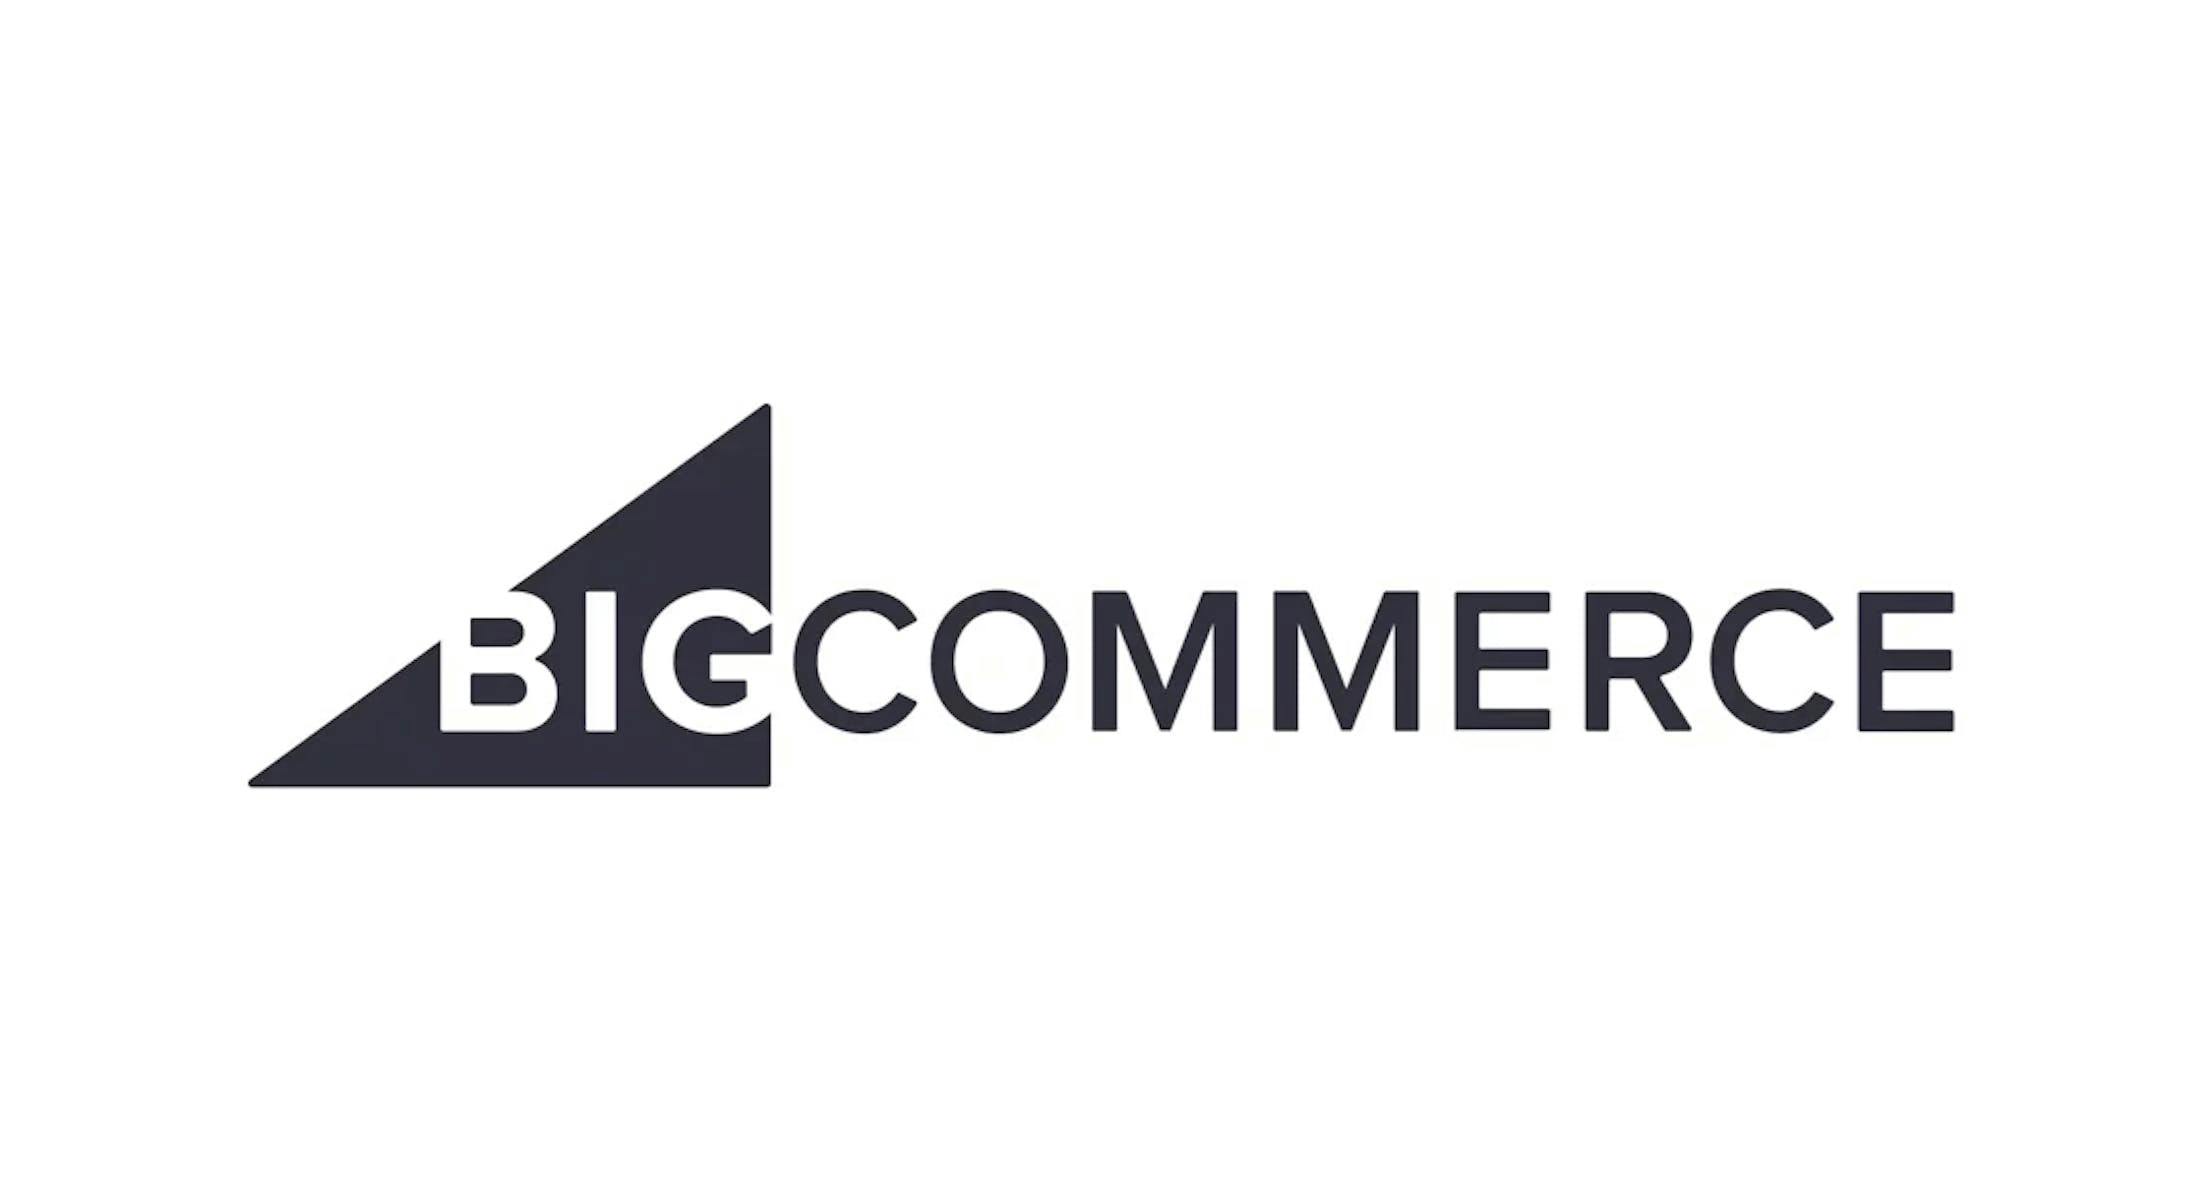 BigCommerce Partner